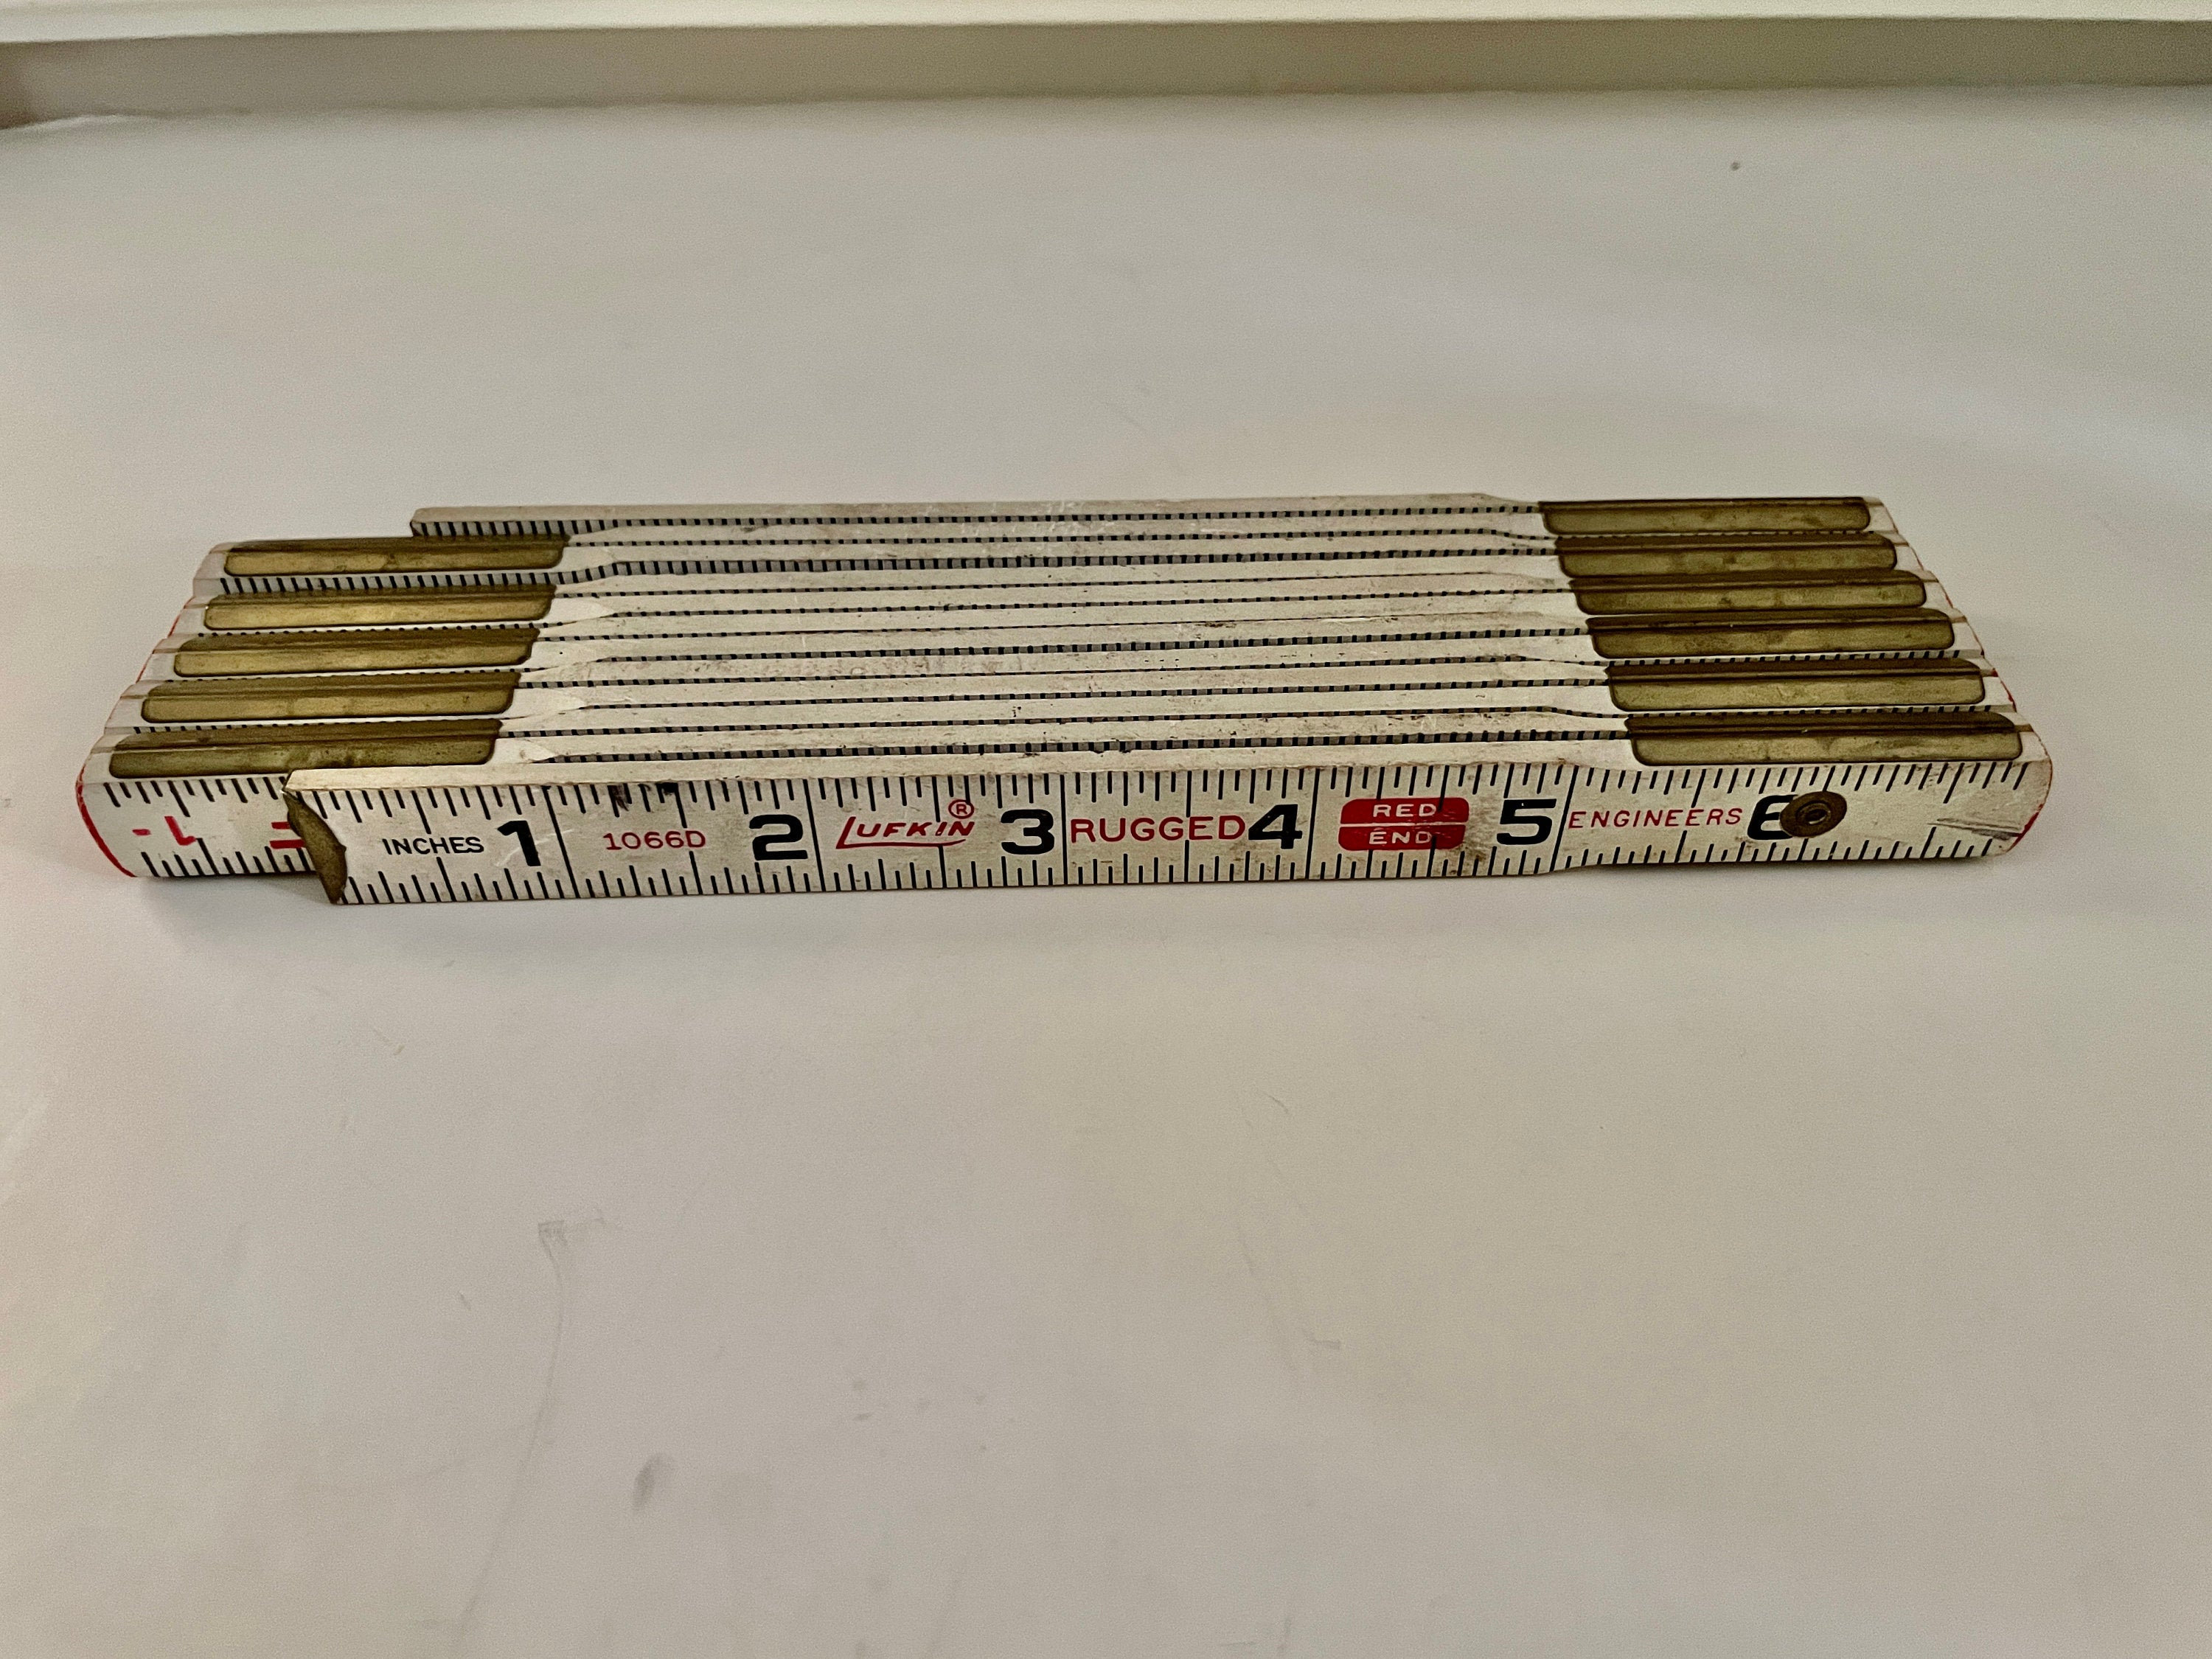 Lufkin ruler No 8526 vintage folding wooden ruler 72 inch – Moody Mabel